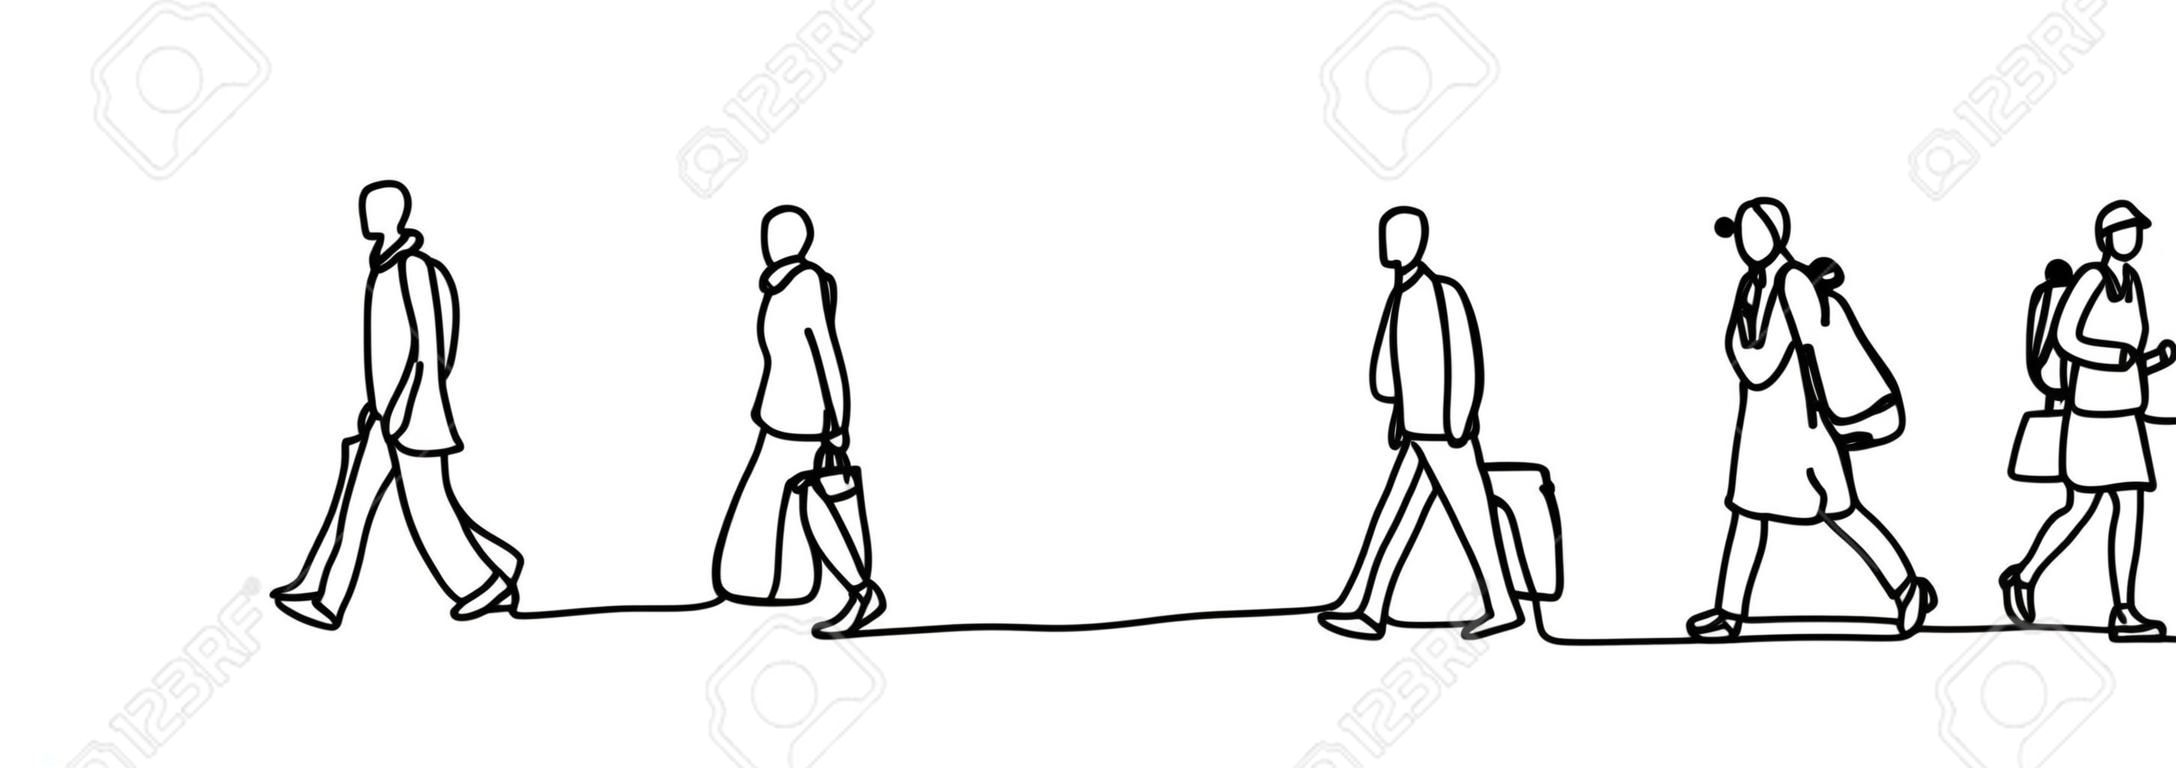 Pendolari urbani una linea continua disegno minimalismo disegno schizzo disegnato a mano illustrazione vettoriale. Persone che camminano prima o dopo l'orario di lavoro.